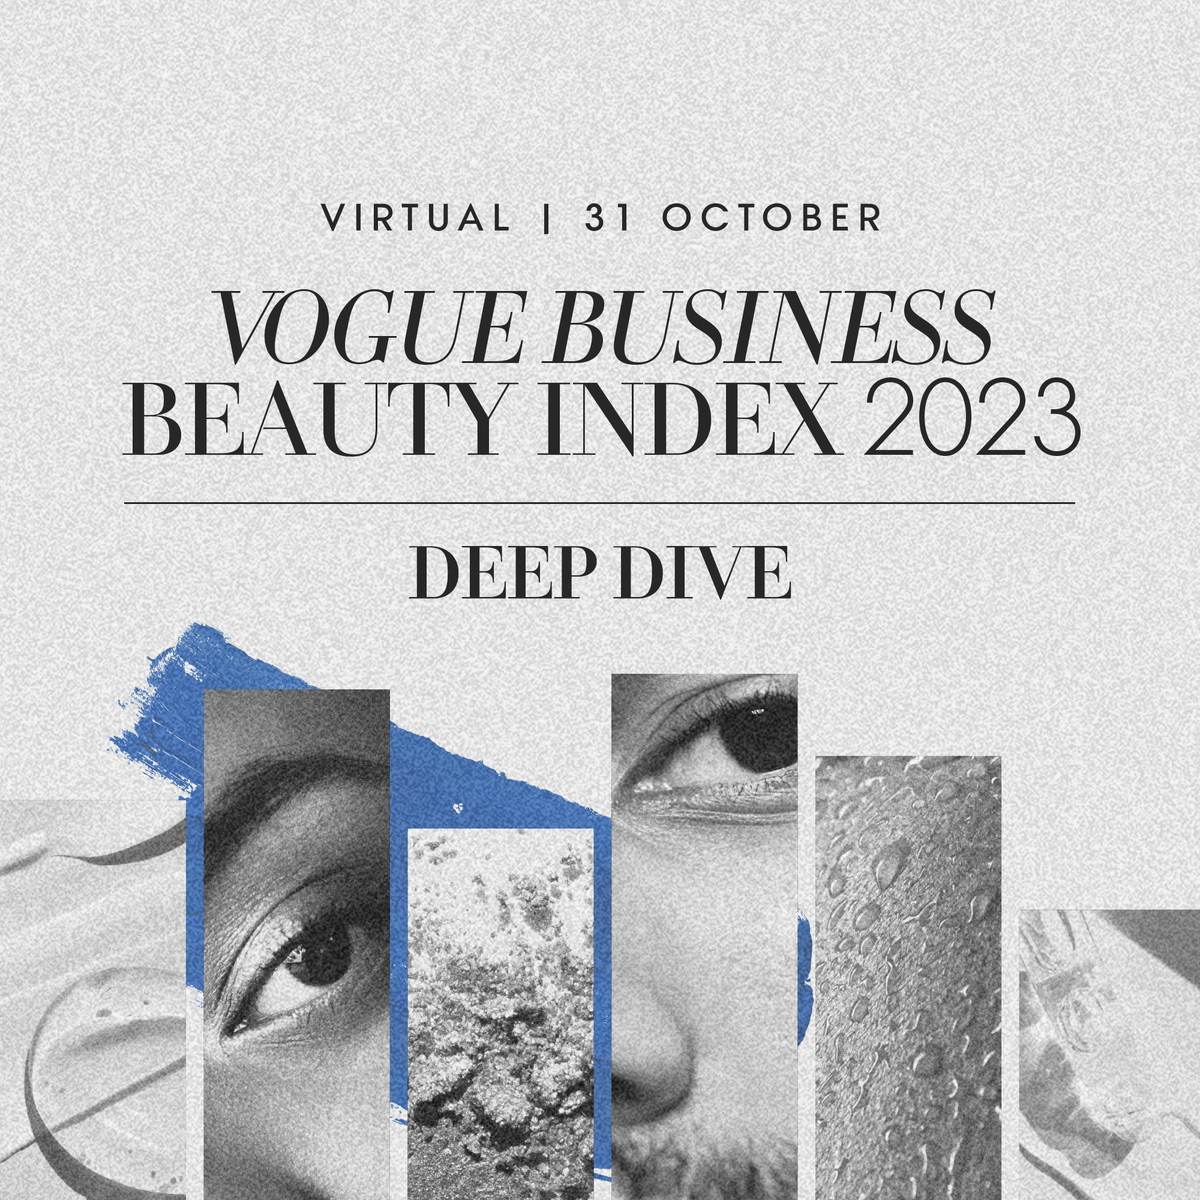 Vogue Business Beauty Index: Live Deep Dive